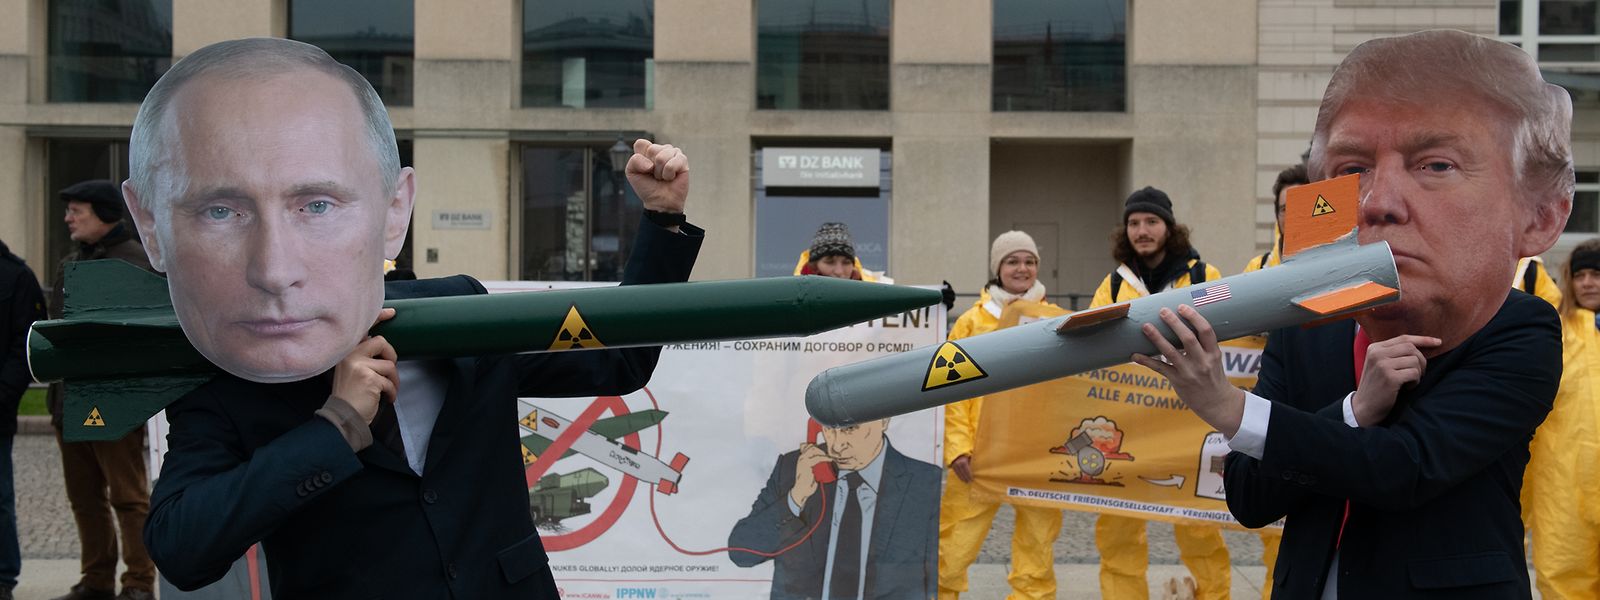 Demonstranten in Berlin stehen sich mit Raketen-Modellen auf dem Pariser Platz gegenüber. Sie protestieren mit der Aktion gegen das drohende Aus des INF-Abrüstungsabkommen zwischen Russland und den USA. 